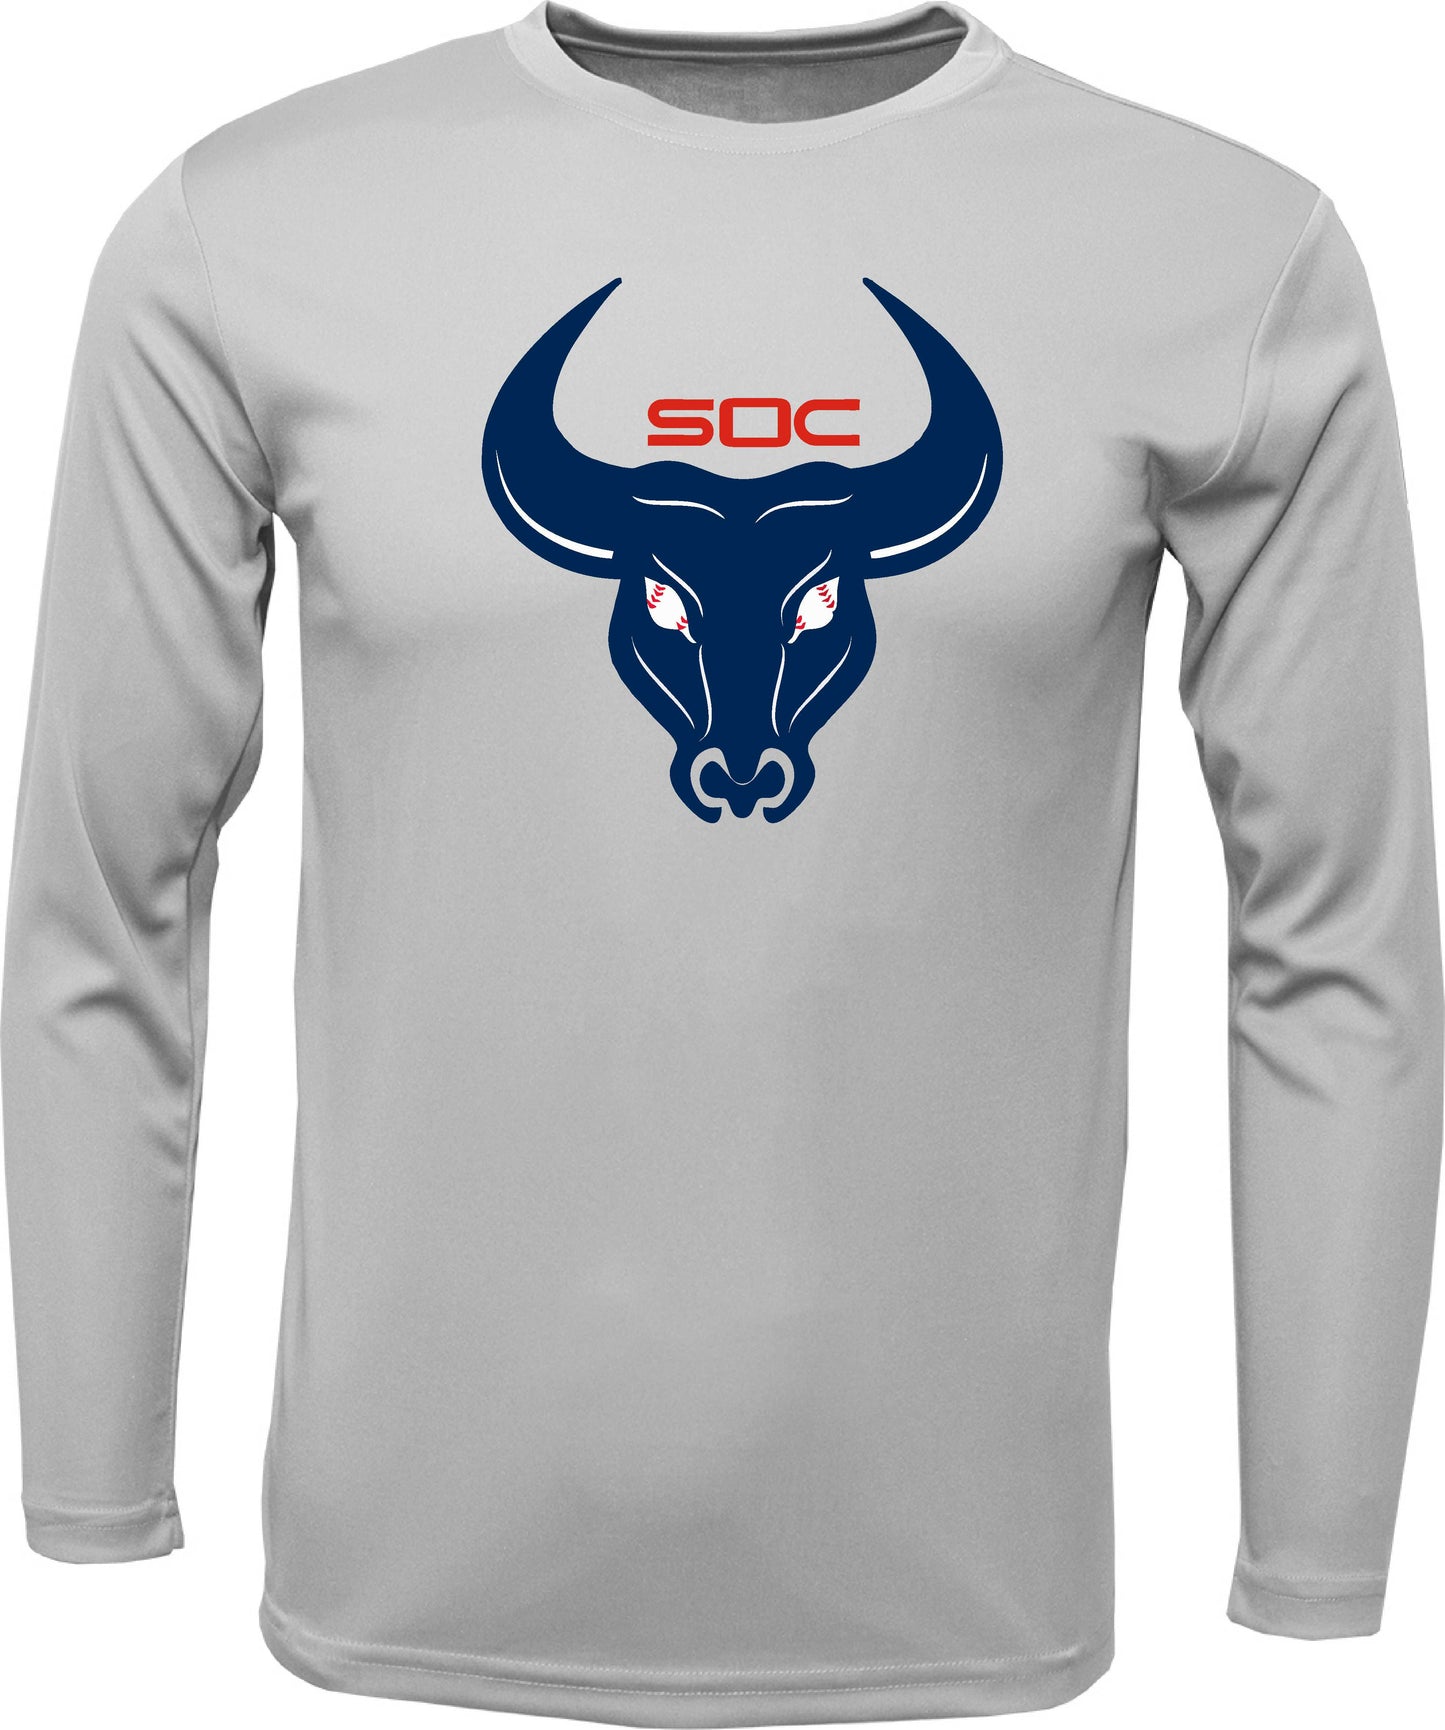 SC Long-sleeve "Bull logo" Dri-fit T-shirt